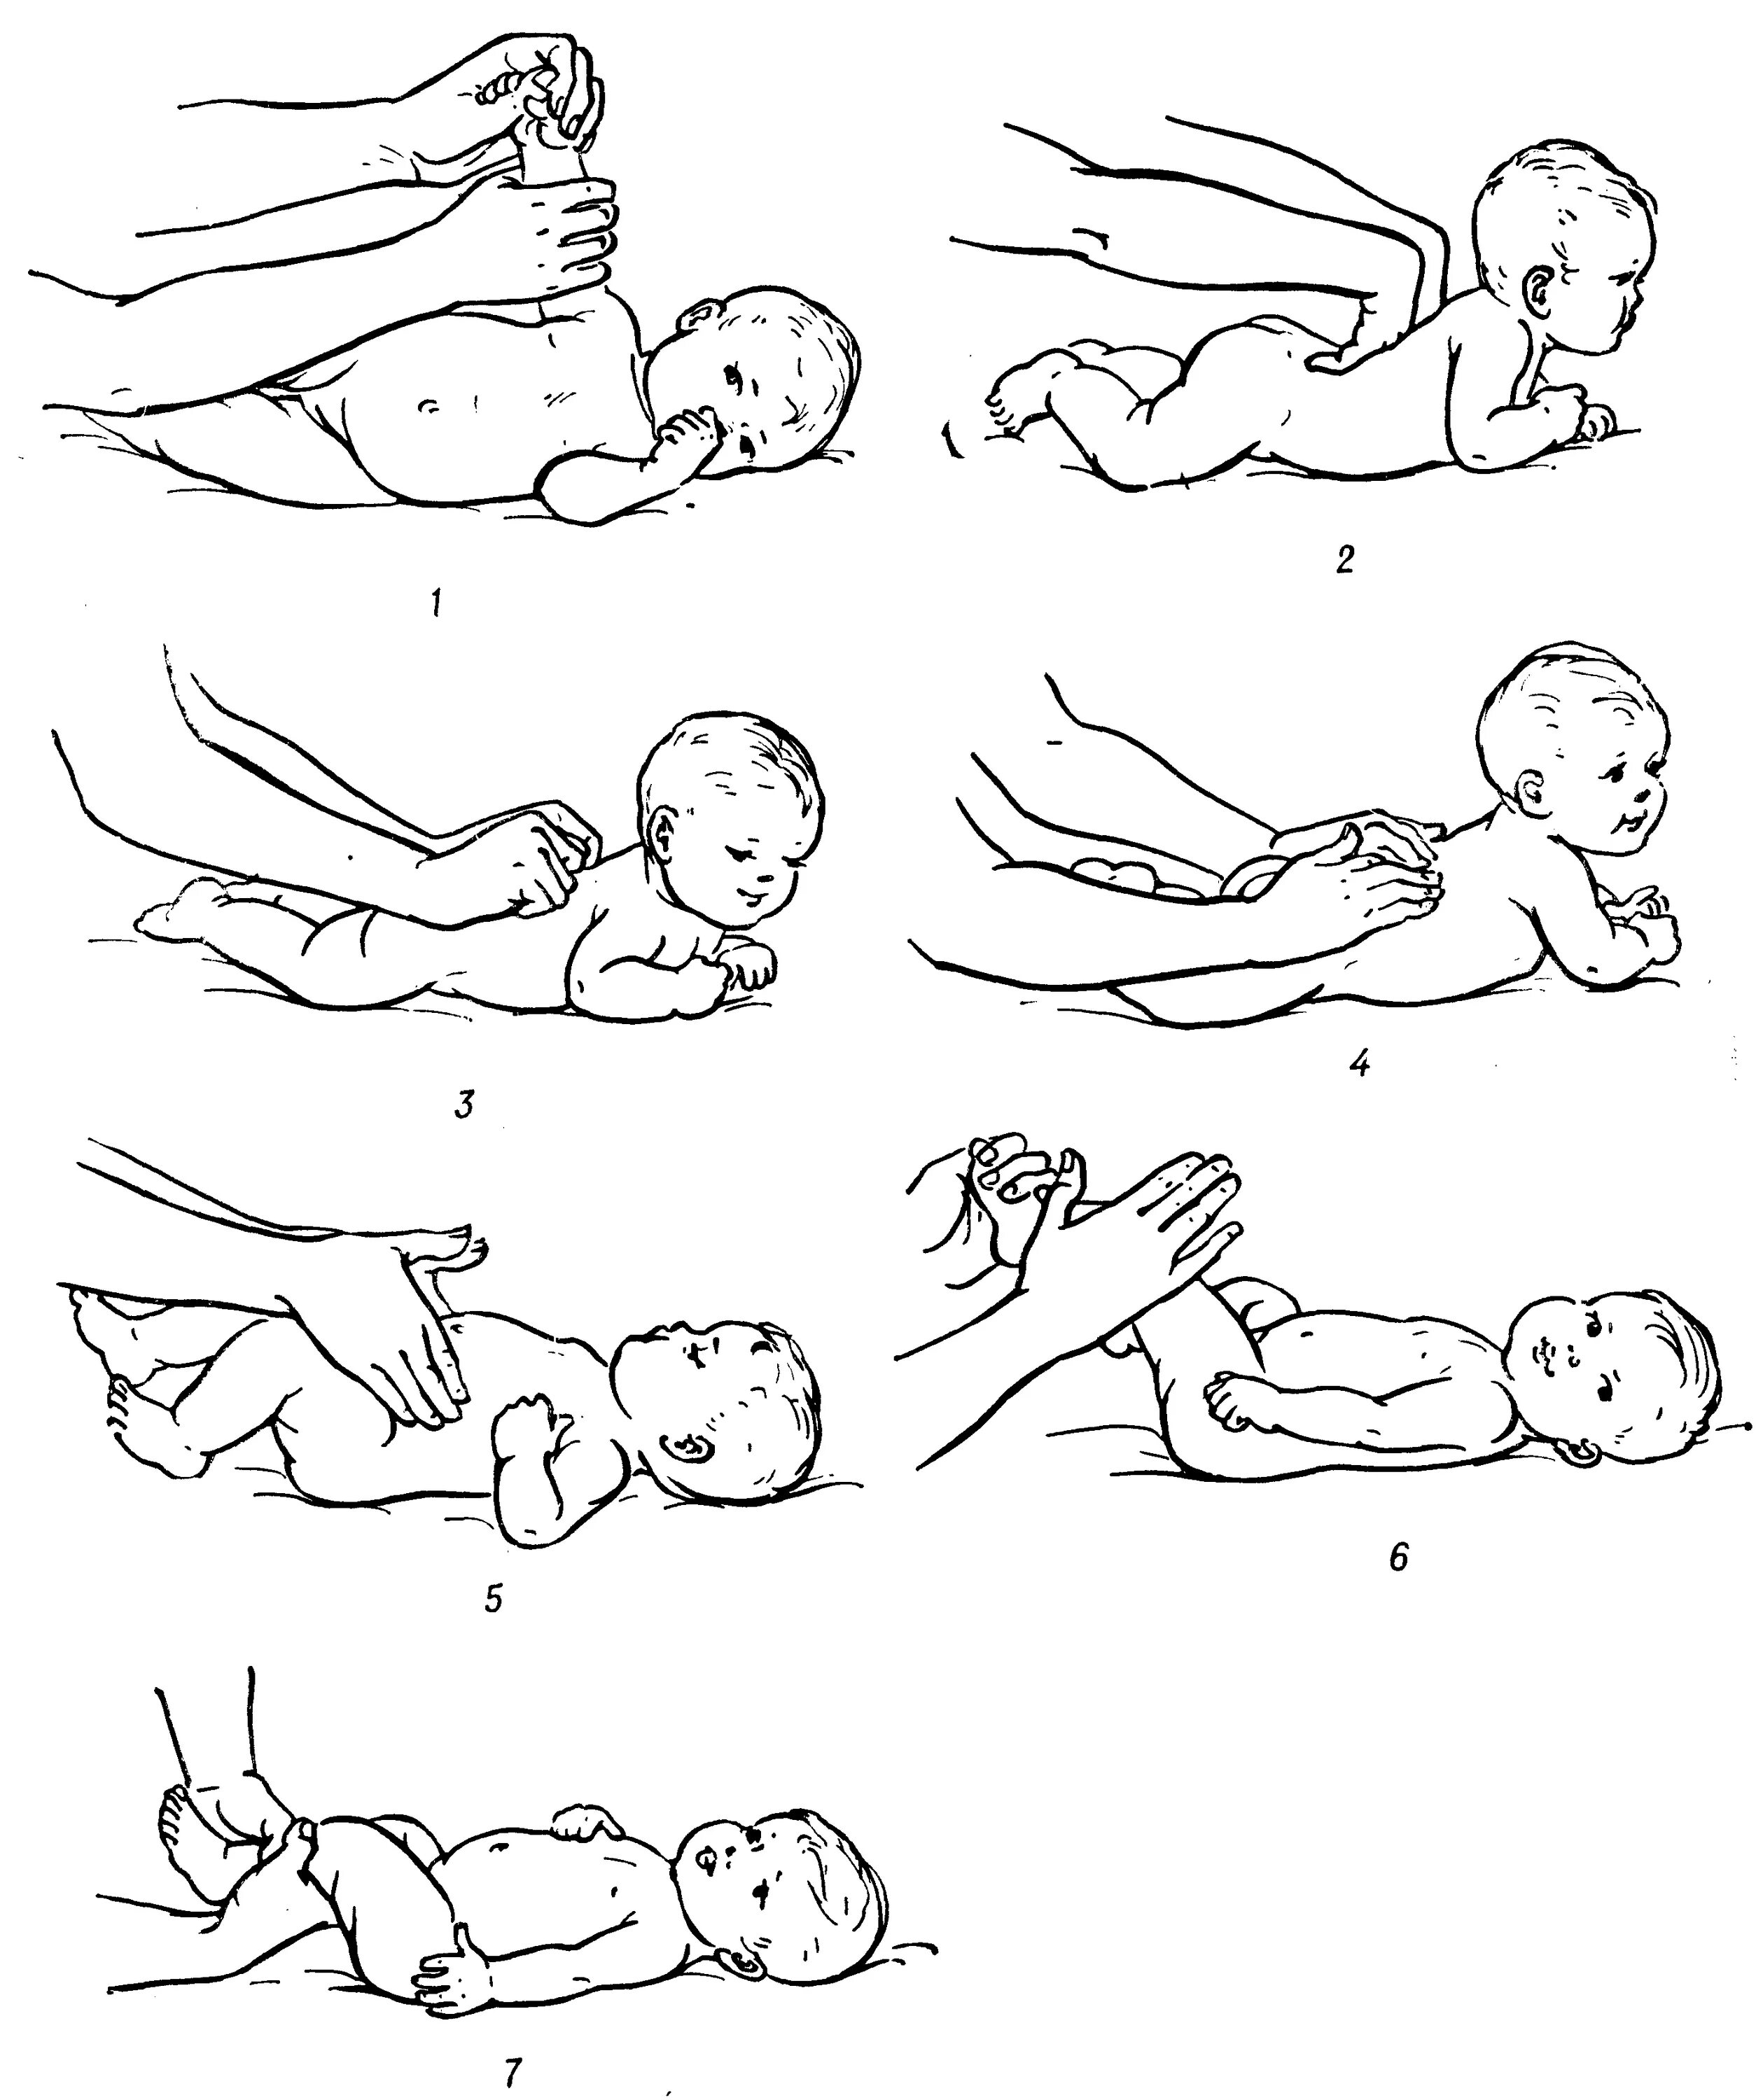 Расслабленный массаж ребенку. Массаж и гимнастика для грудничков от 0 до 3 месяцев. Массаж для спины новорожденному ребенку 2 месяца. Массаж спины грудничку в 3 месяца. Массаж при рахите у детей 1.5 года.